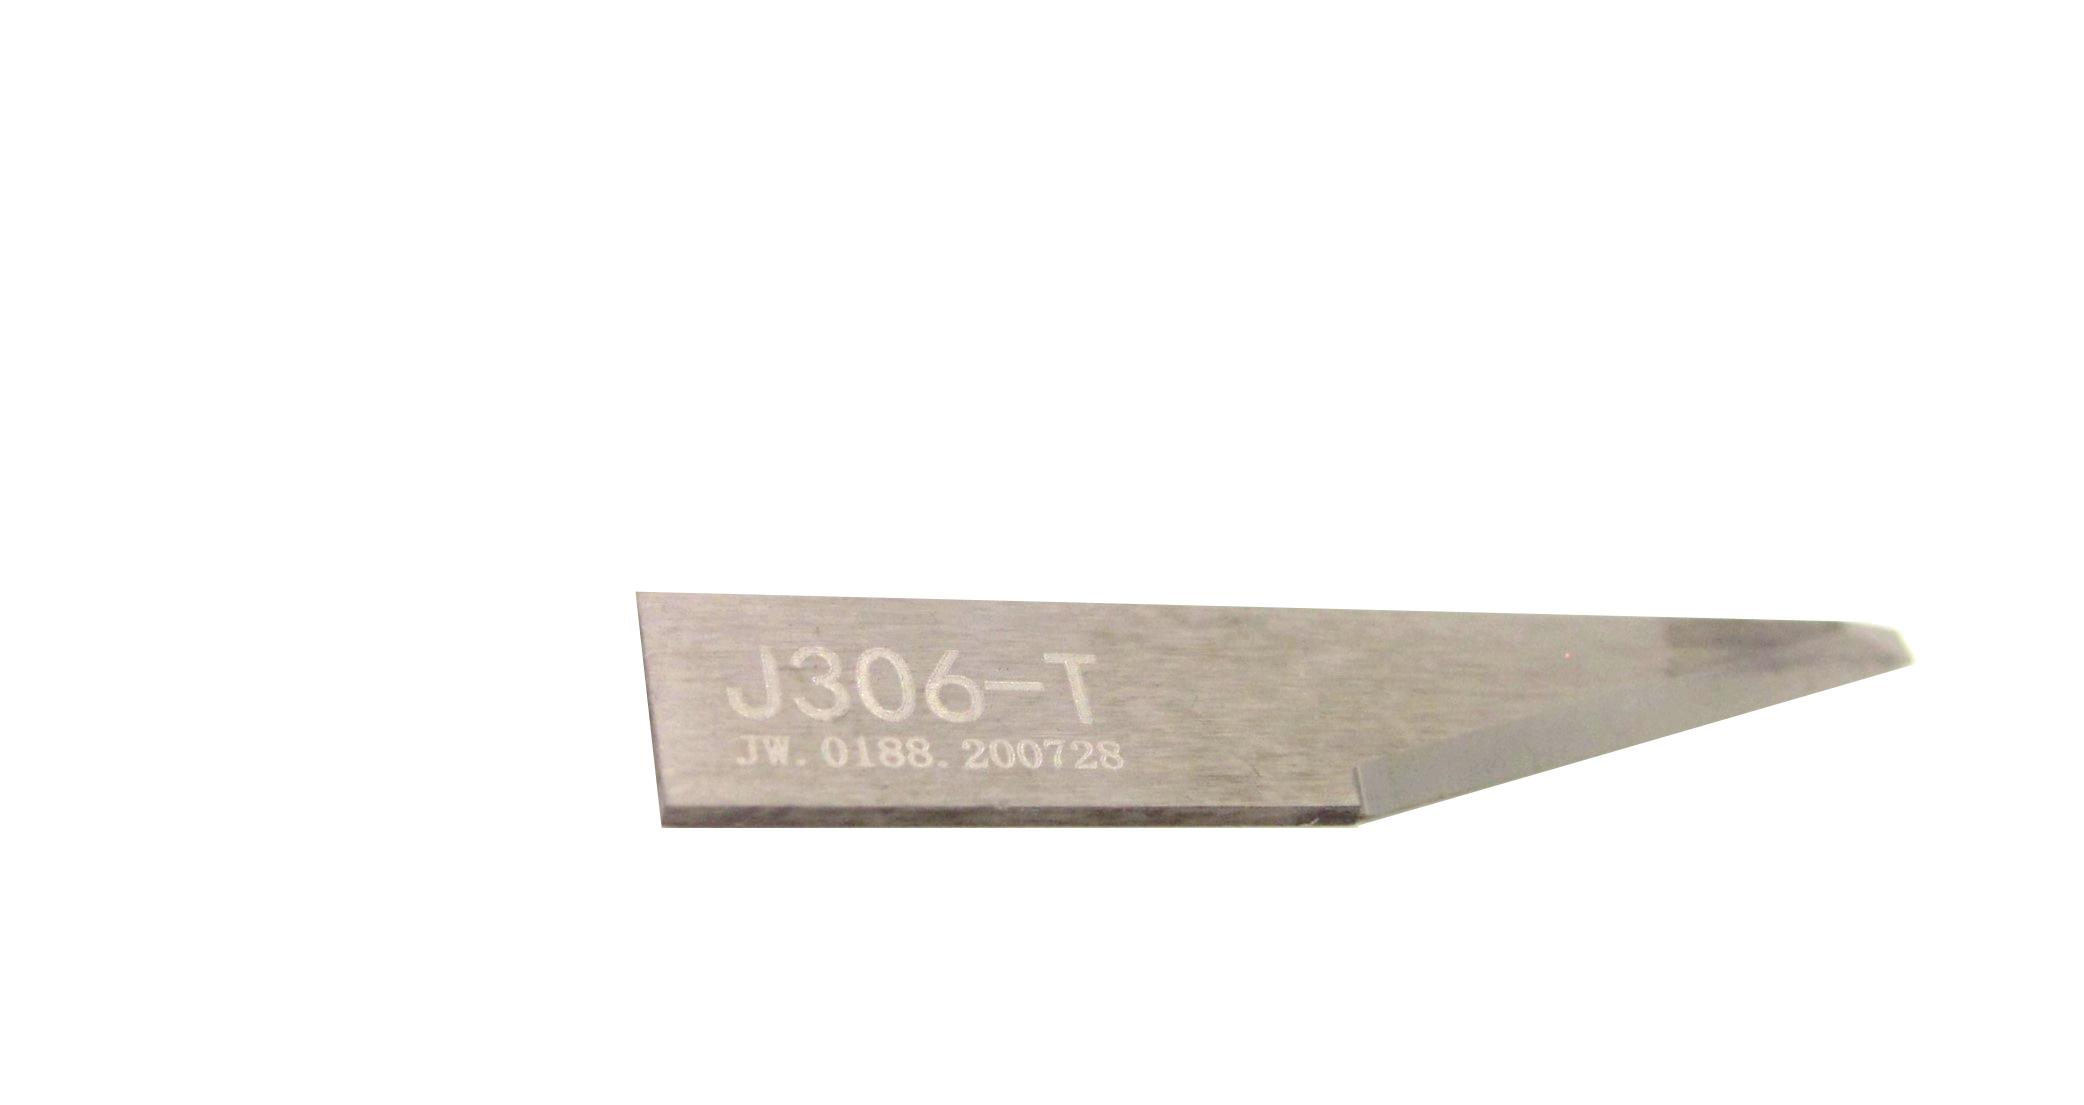 Lame type Jwei j306T